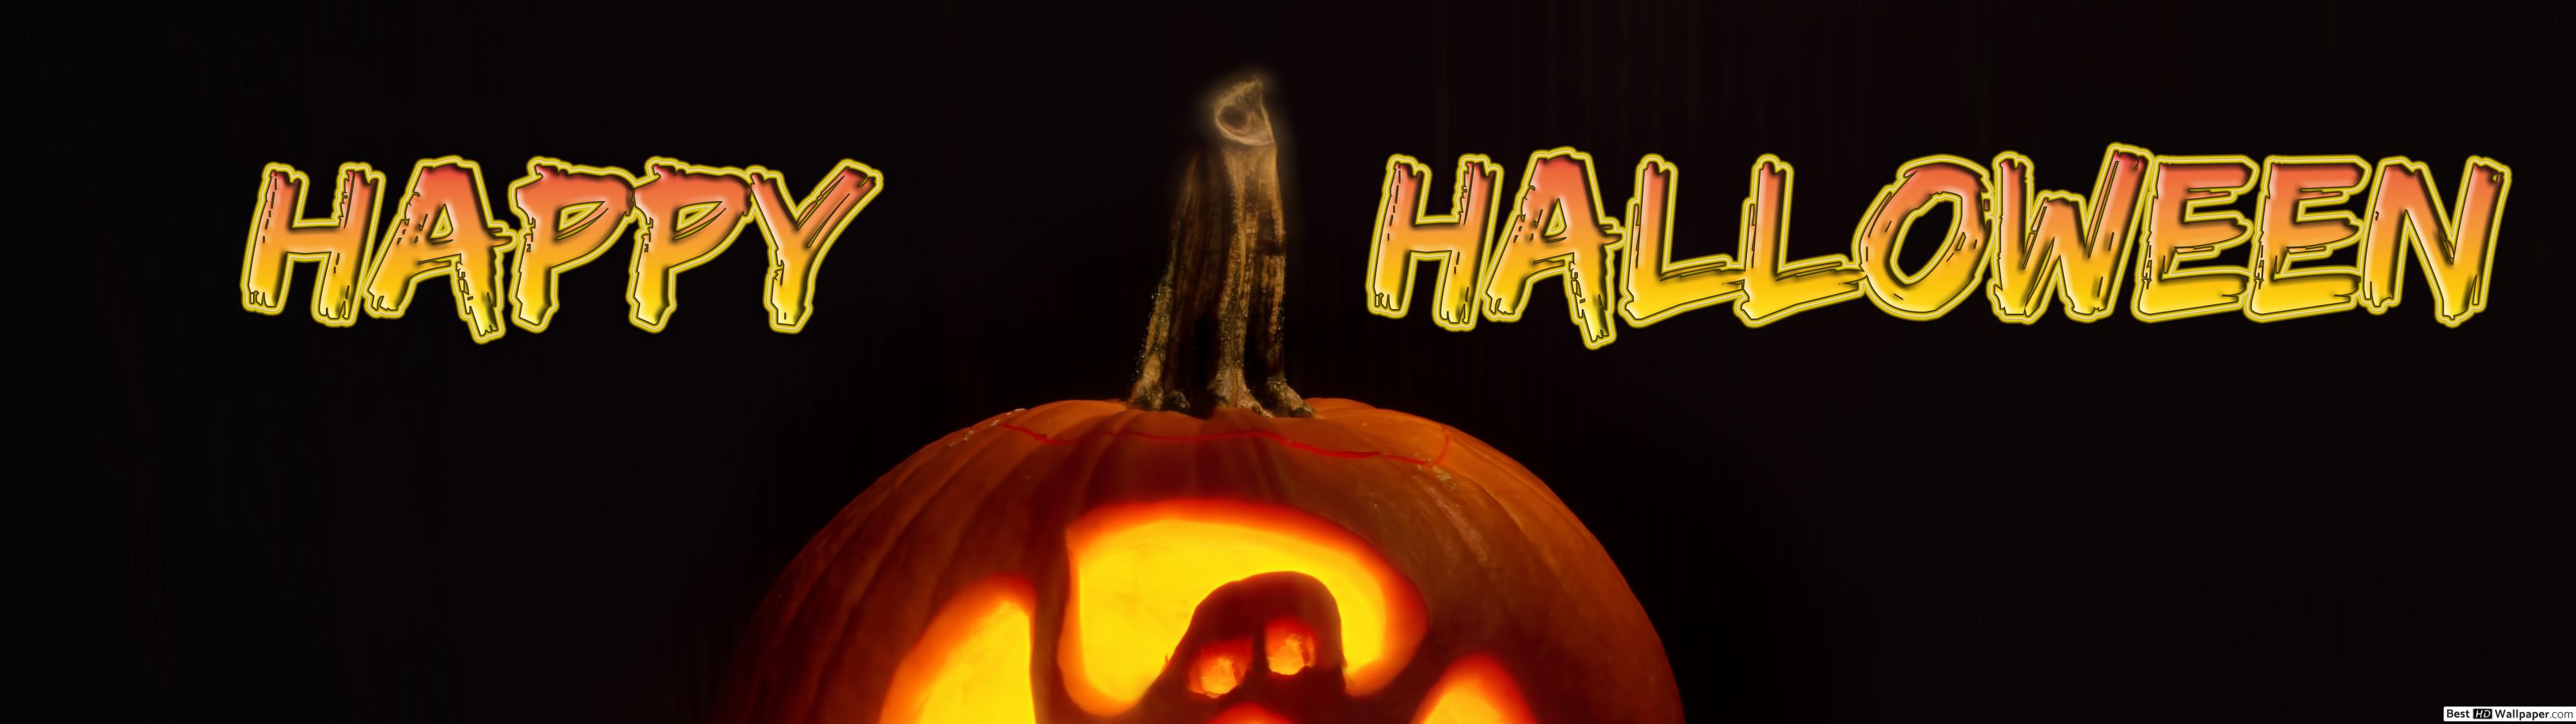 Happy Halloween Pumpkin HD wallpaper download